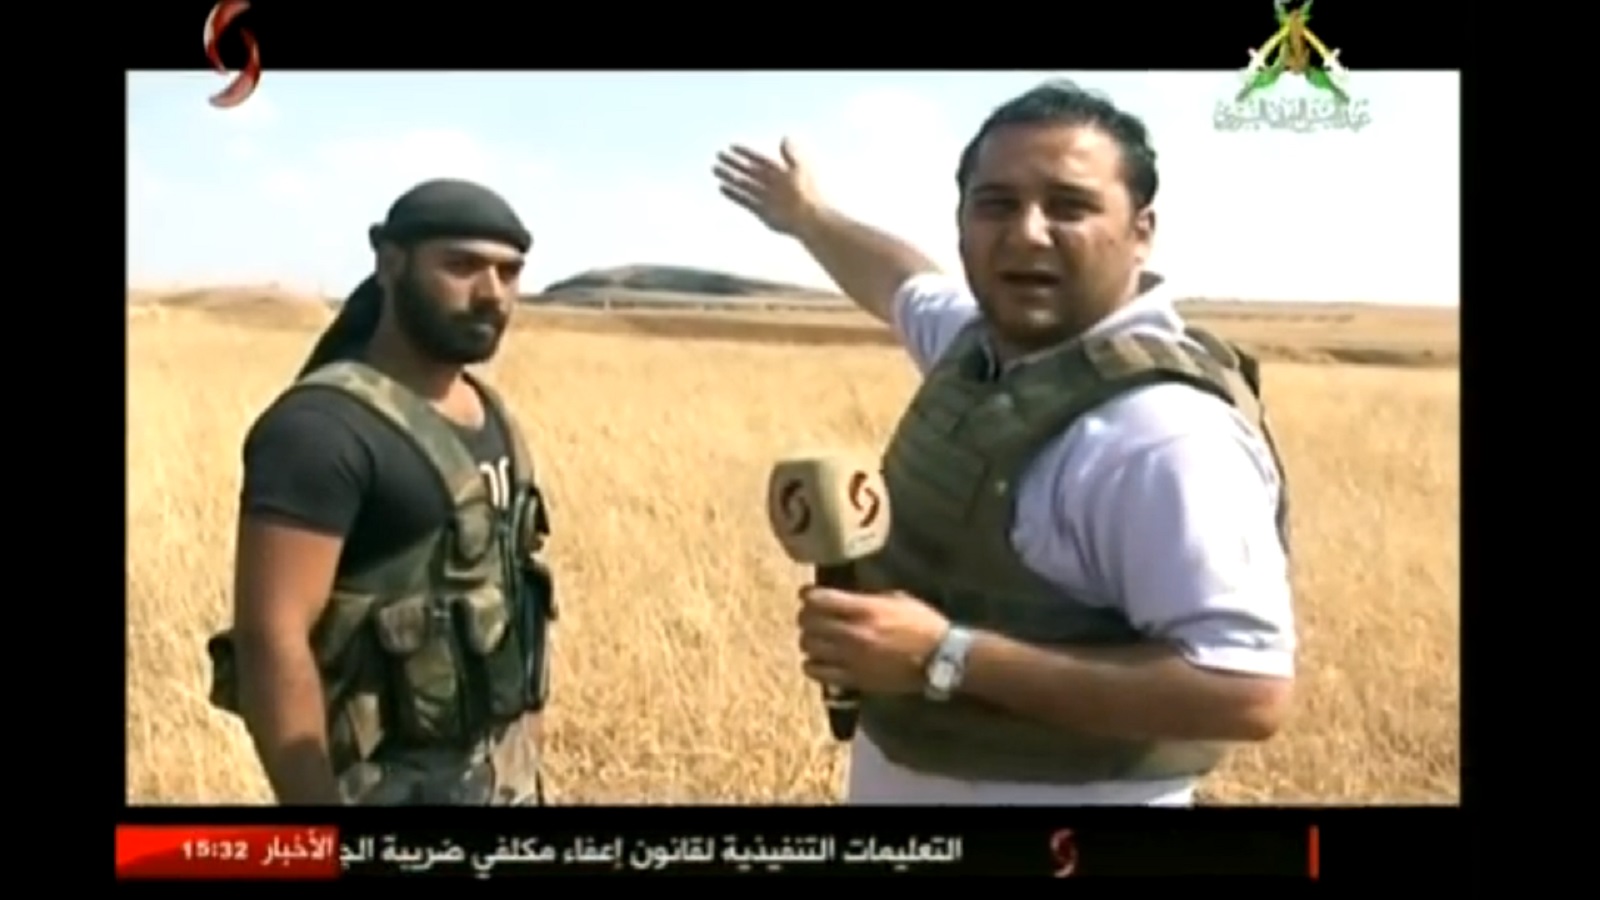 الاعلام الرسمي السوري يبعد حزب الله عن كاميراته